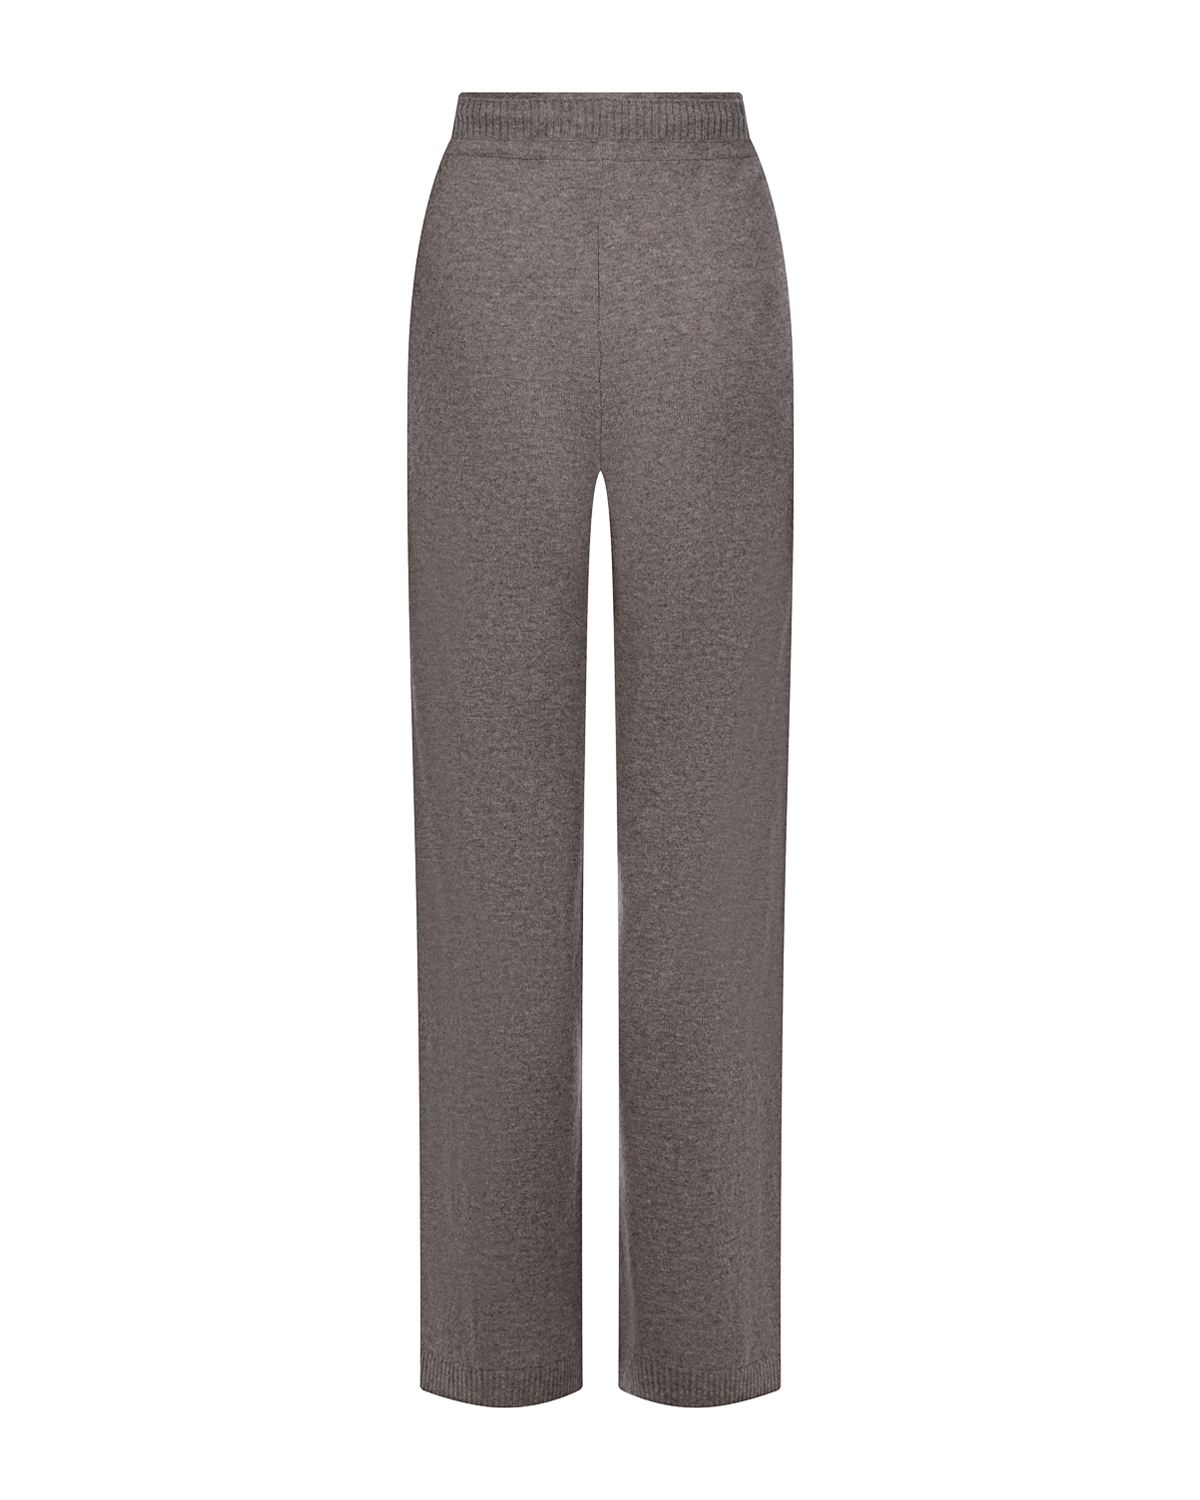 Прямые брюки кофейного цвета FTC Cashmere, размер 42 - фото 5